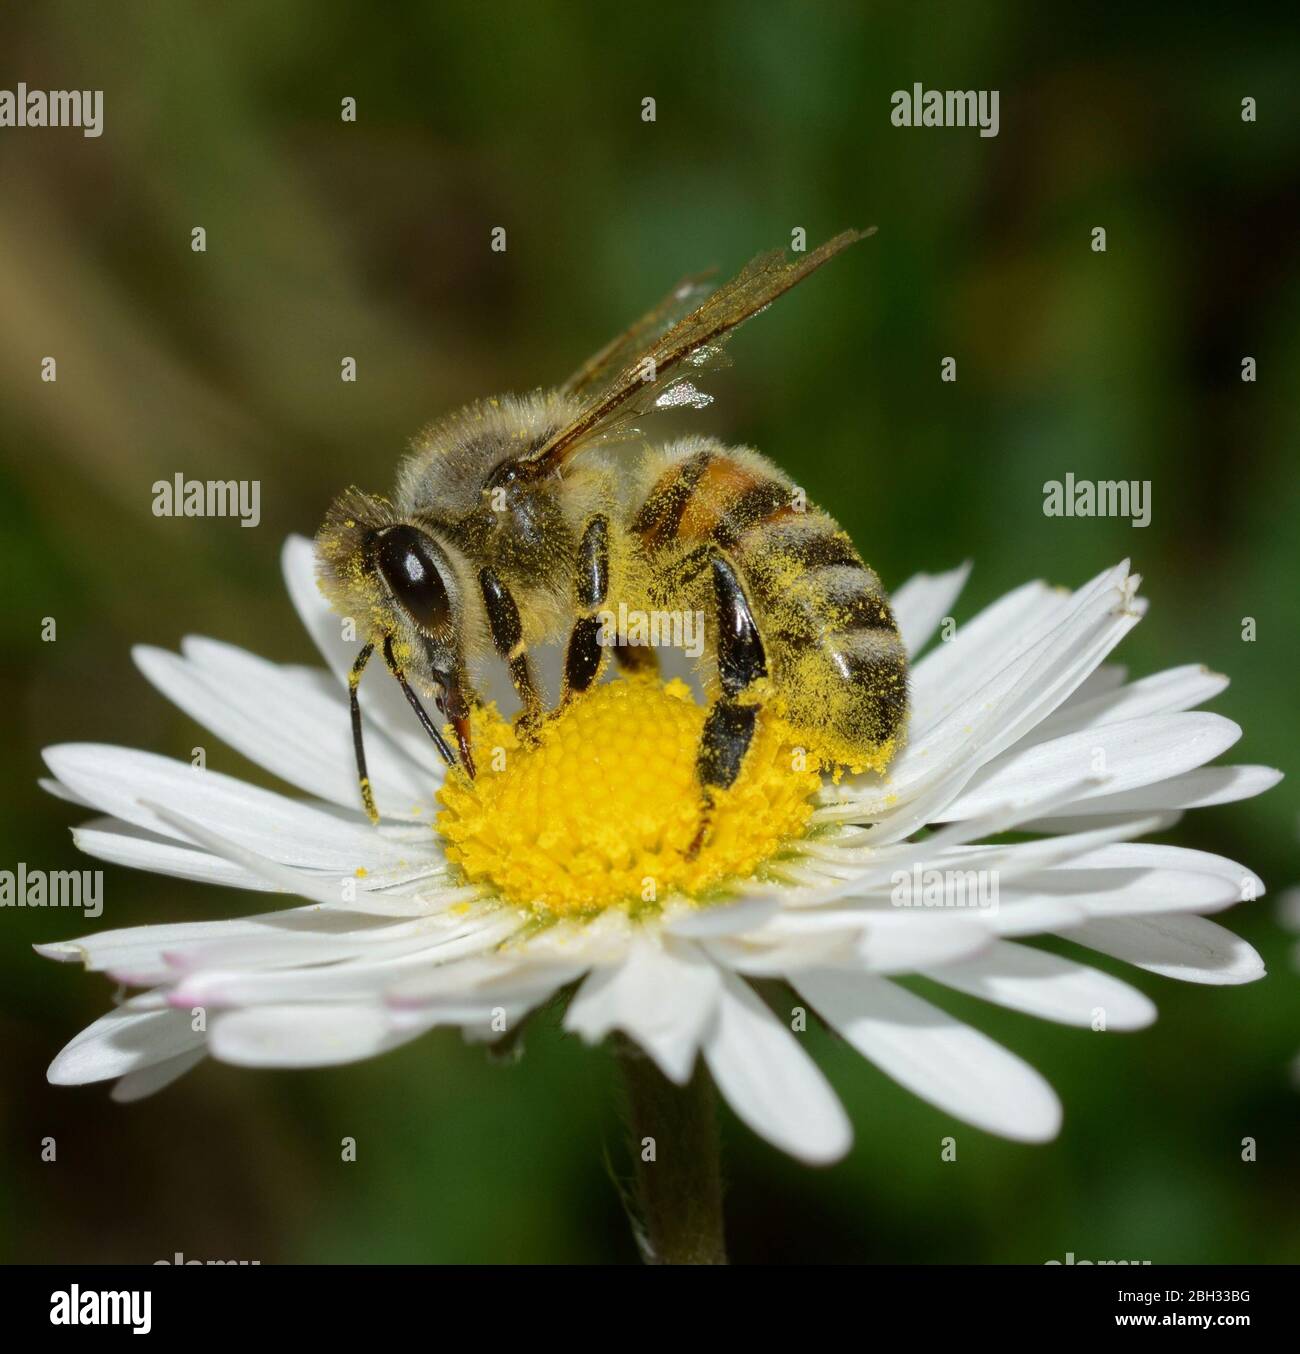 Nahaufnahme von Honigbiene, die Nektar auf südliche Gänseblümchen auf verschwommenem Hintergrund von grünem Gras sammelt Stockfoto